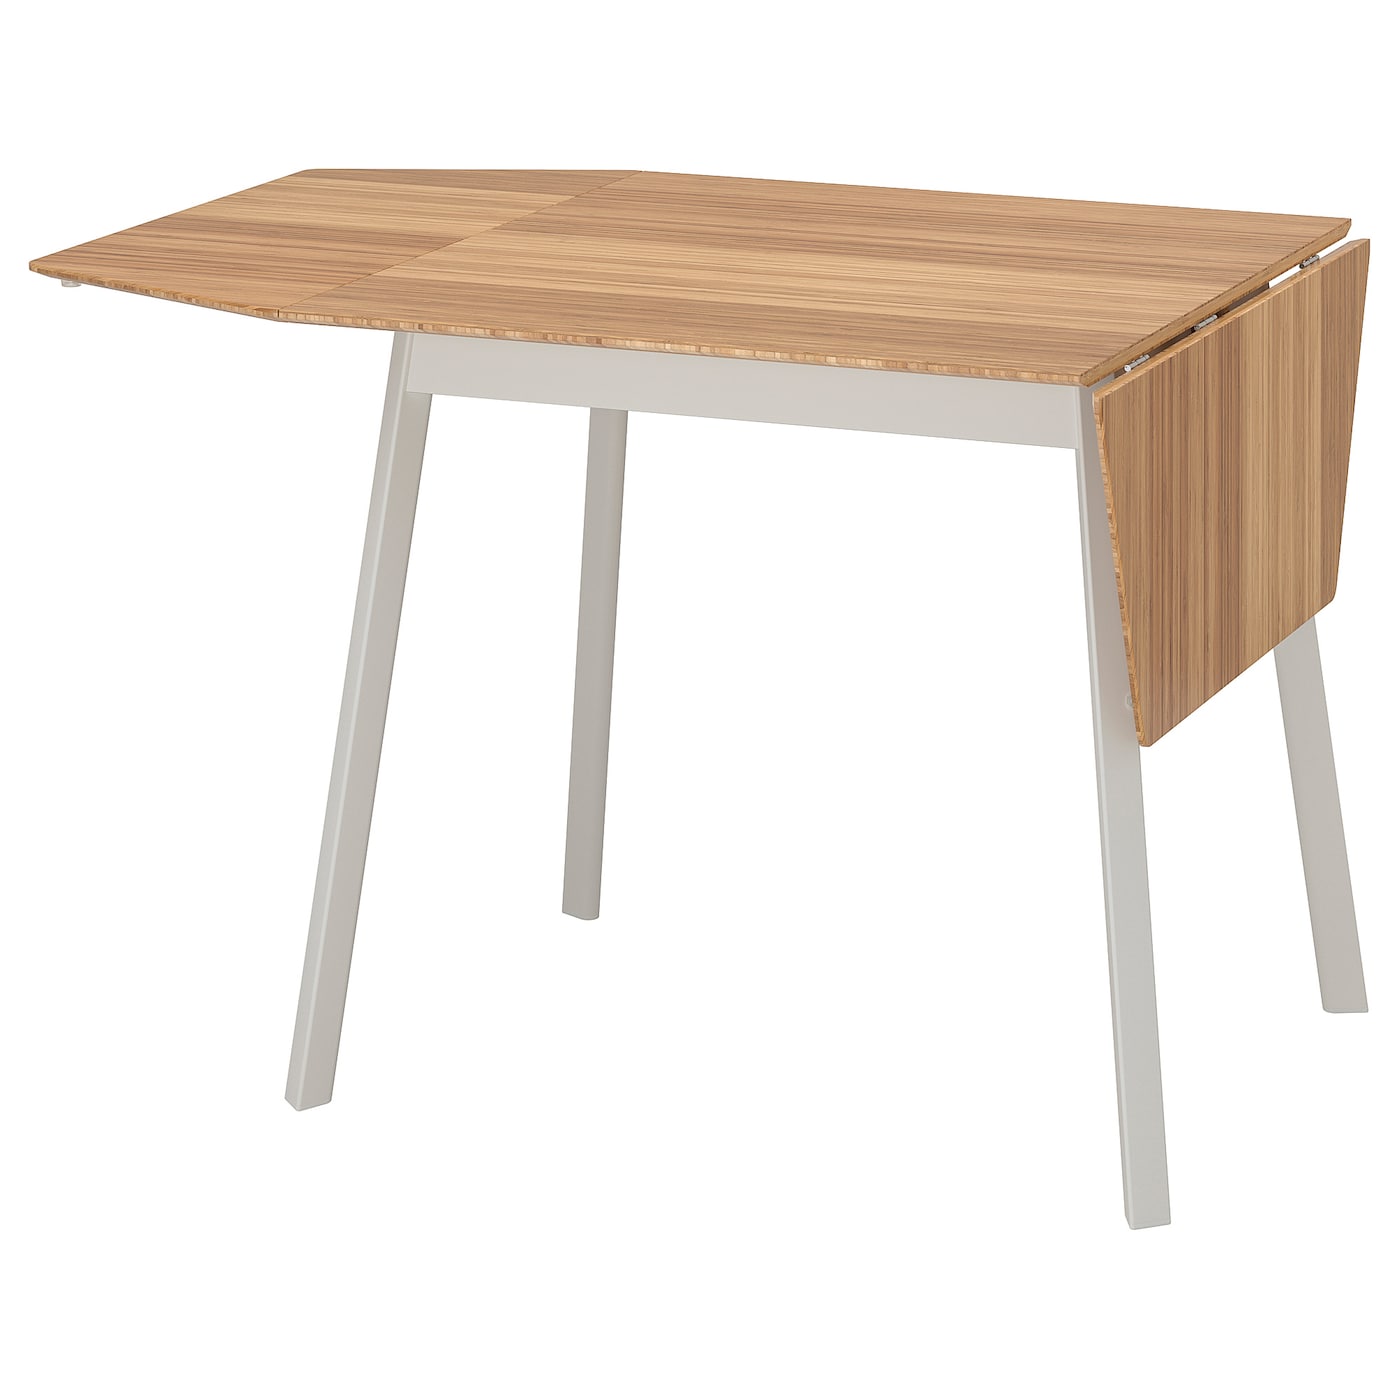 Столик откидной - IKEA PS 2012, 74/106/138x80 см, бамбук/белый, ПС 2012 ИКЕА